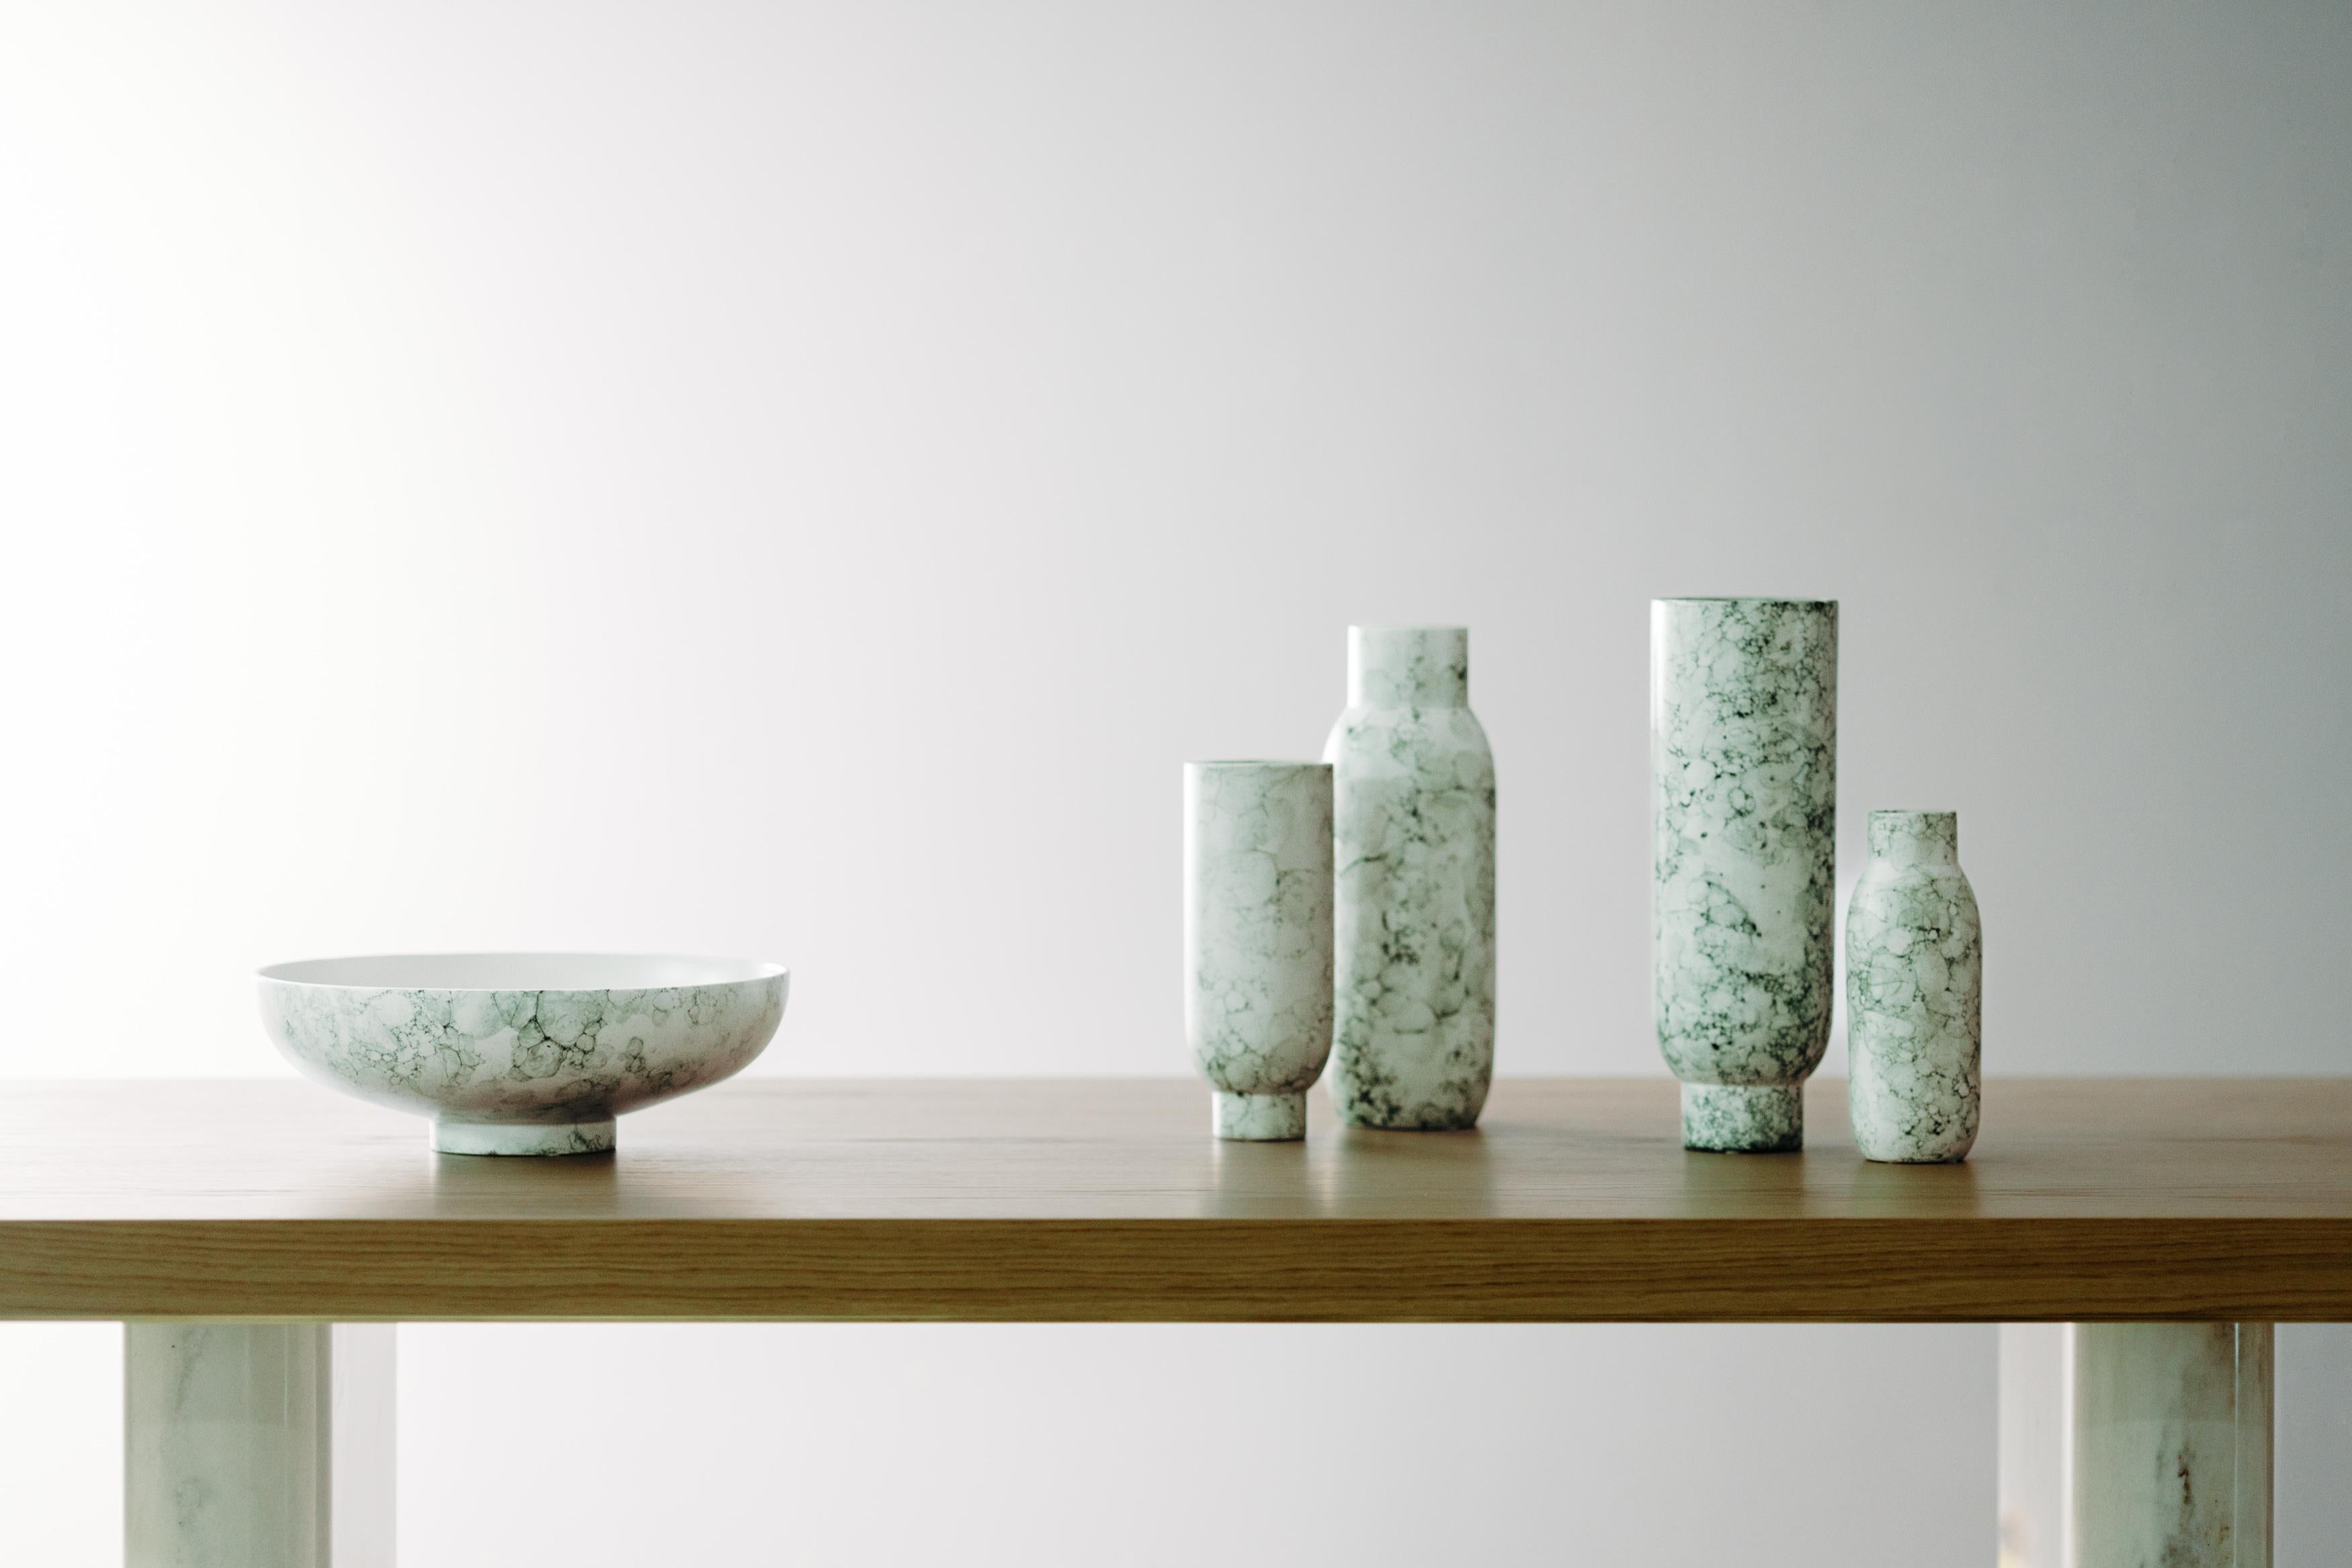 Set/5 Keramikvasen und Schale, Weiß & Grün, Lusitanus Home Collection, Handgefertigt in Portugal - Europa von Lusitanus Home.

Dieses schöne Set besteht aus vier wasserfesten Keramikvasen und einer Schale, die sich perfekt für unzählige